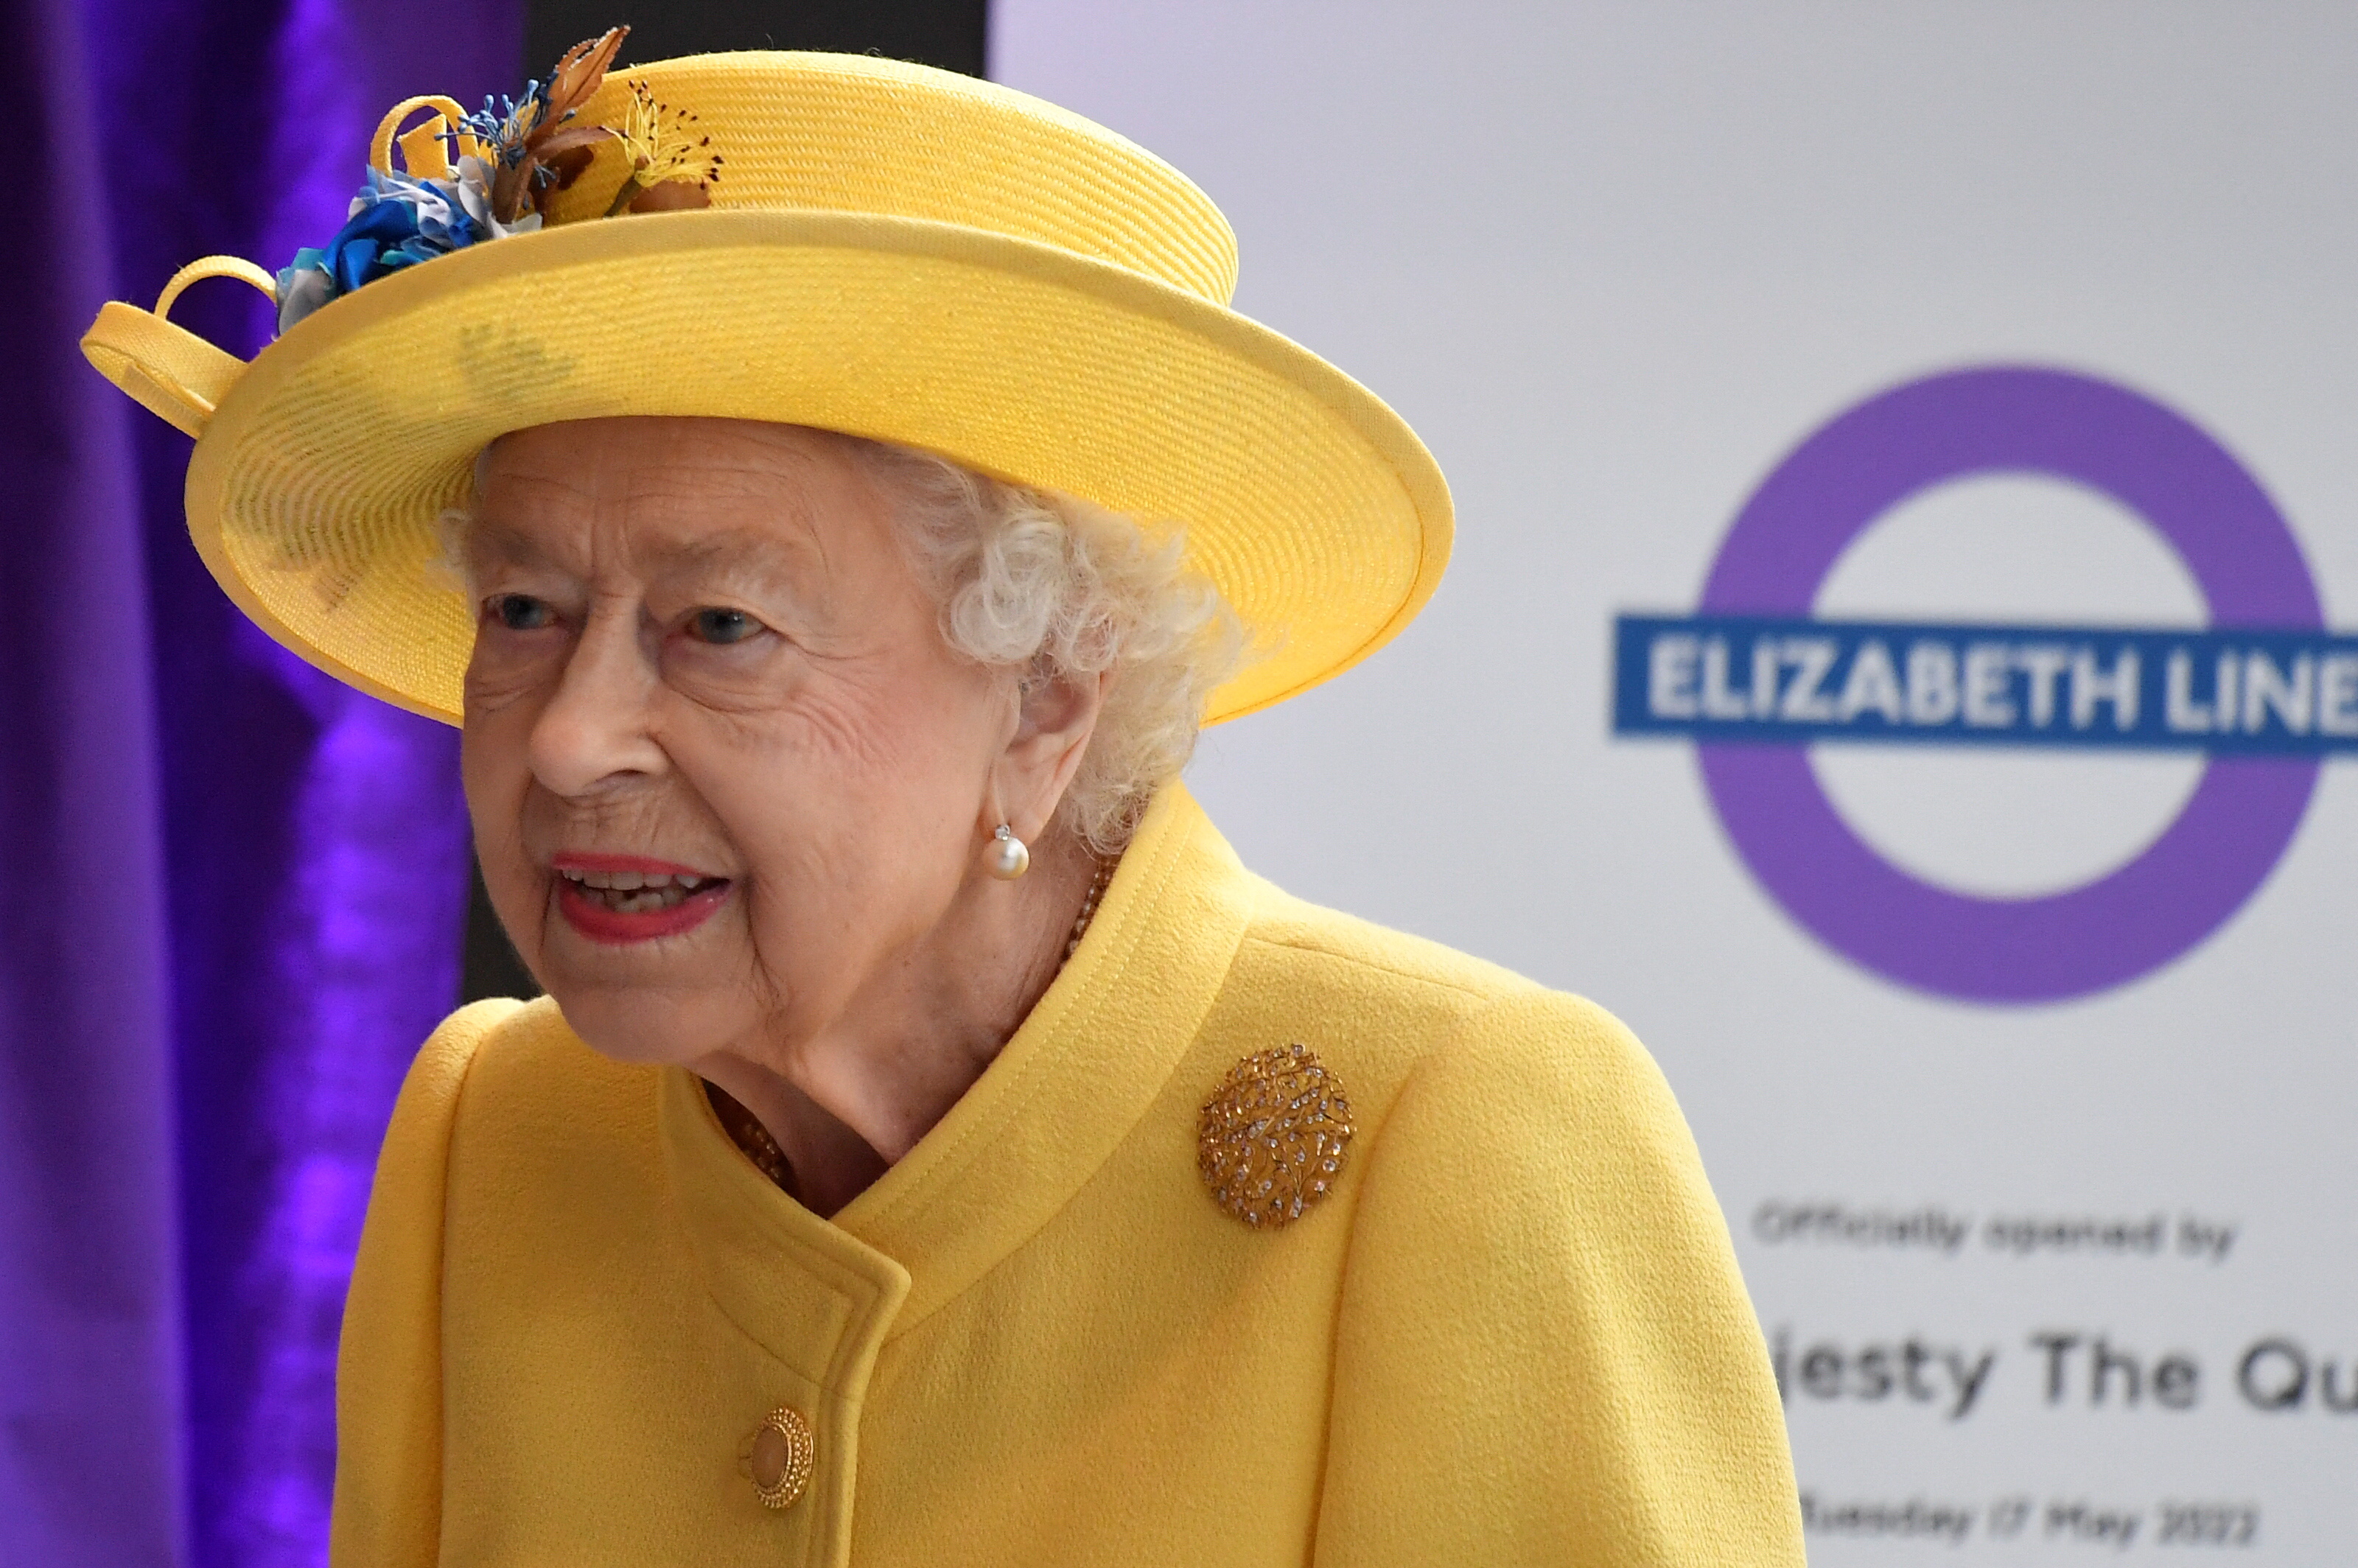 La presencia de la reina es una “noticia feliz”, subrayó un portavoz del Palacio de Buckingham. (REUTERS/Toby Melville)